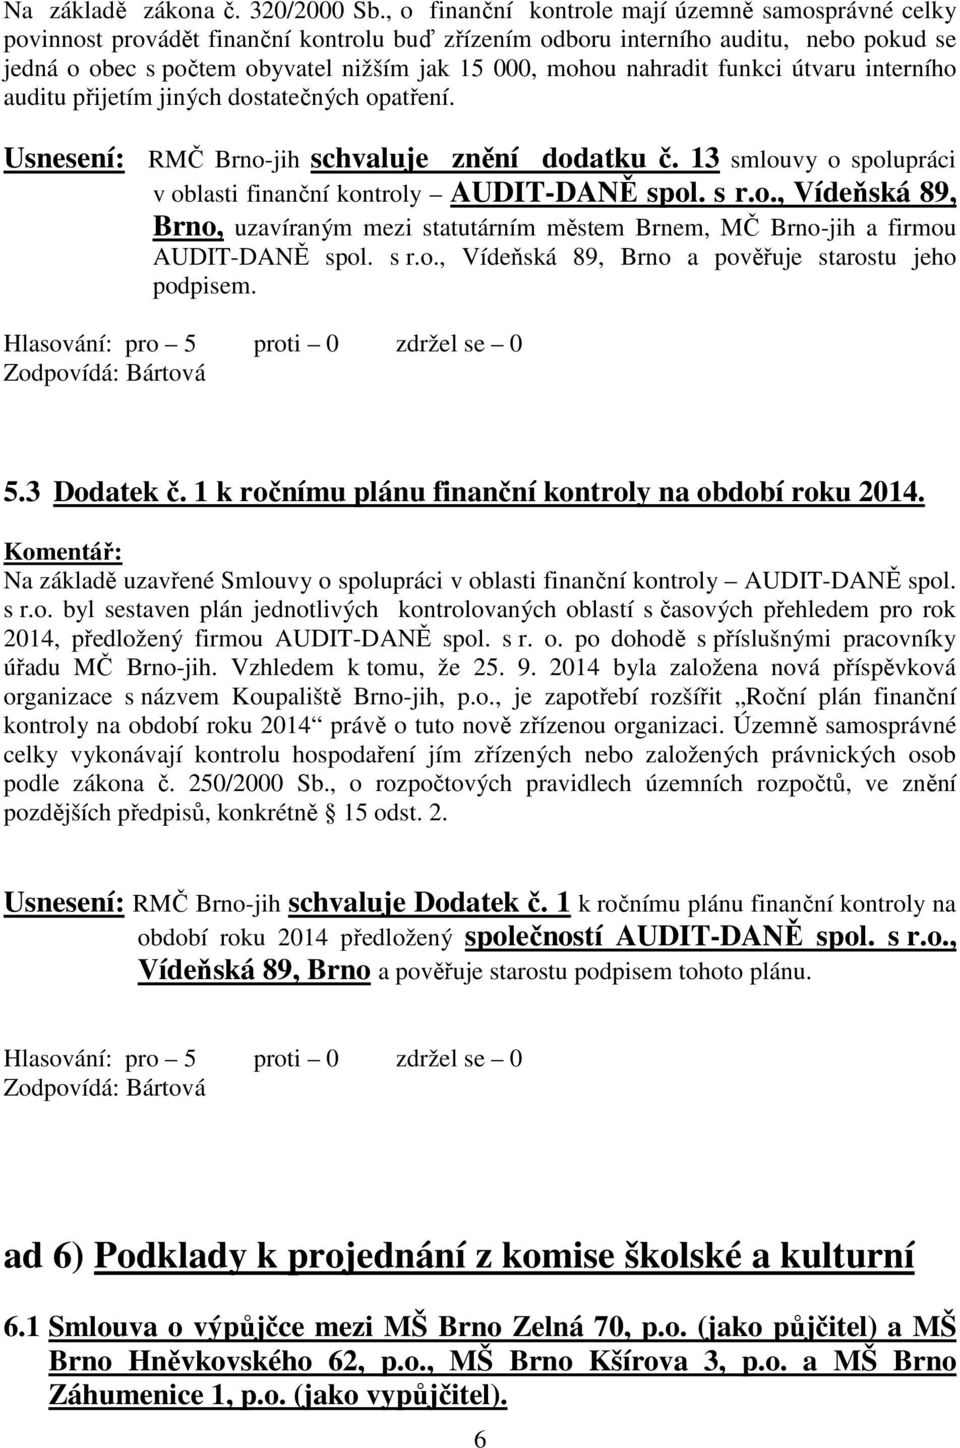 nahradit funkci útvaru interního auditu přijetím jiných dostatečných opatření. Usnesení: RMČ Brno-jih schvaluje znění dodatku č. 13 smlouvy o spolupráci v oblasti finanční kontroly AUDIT-DANĚ spol.